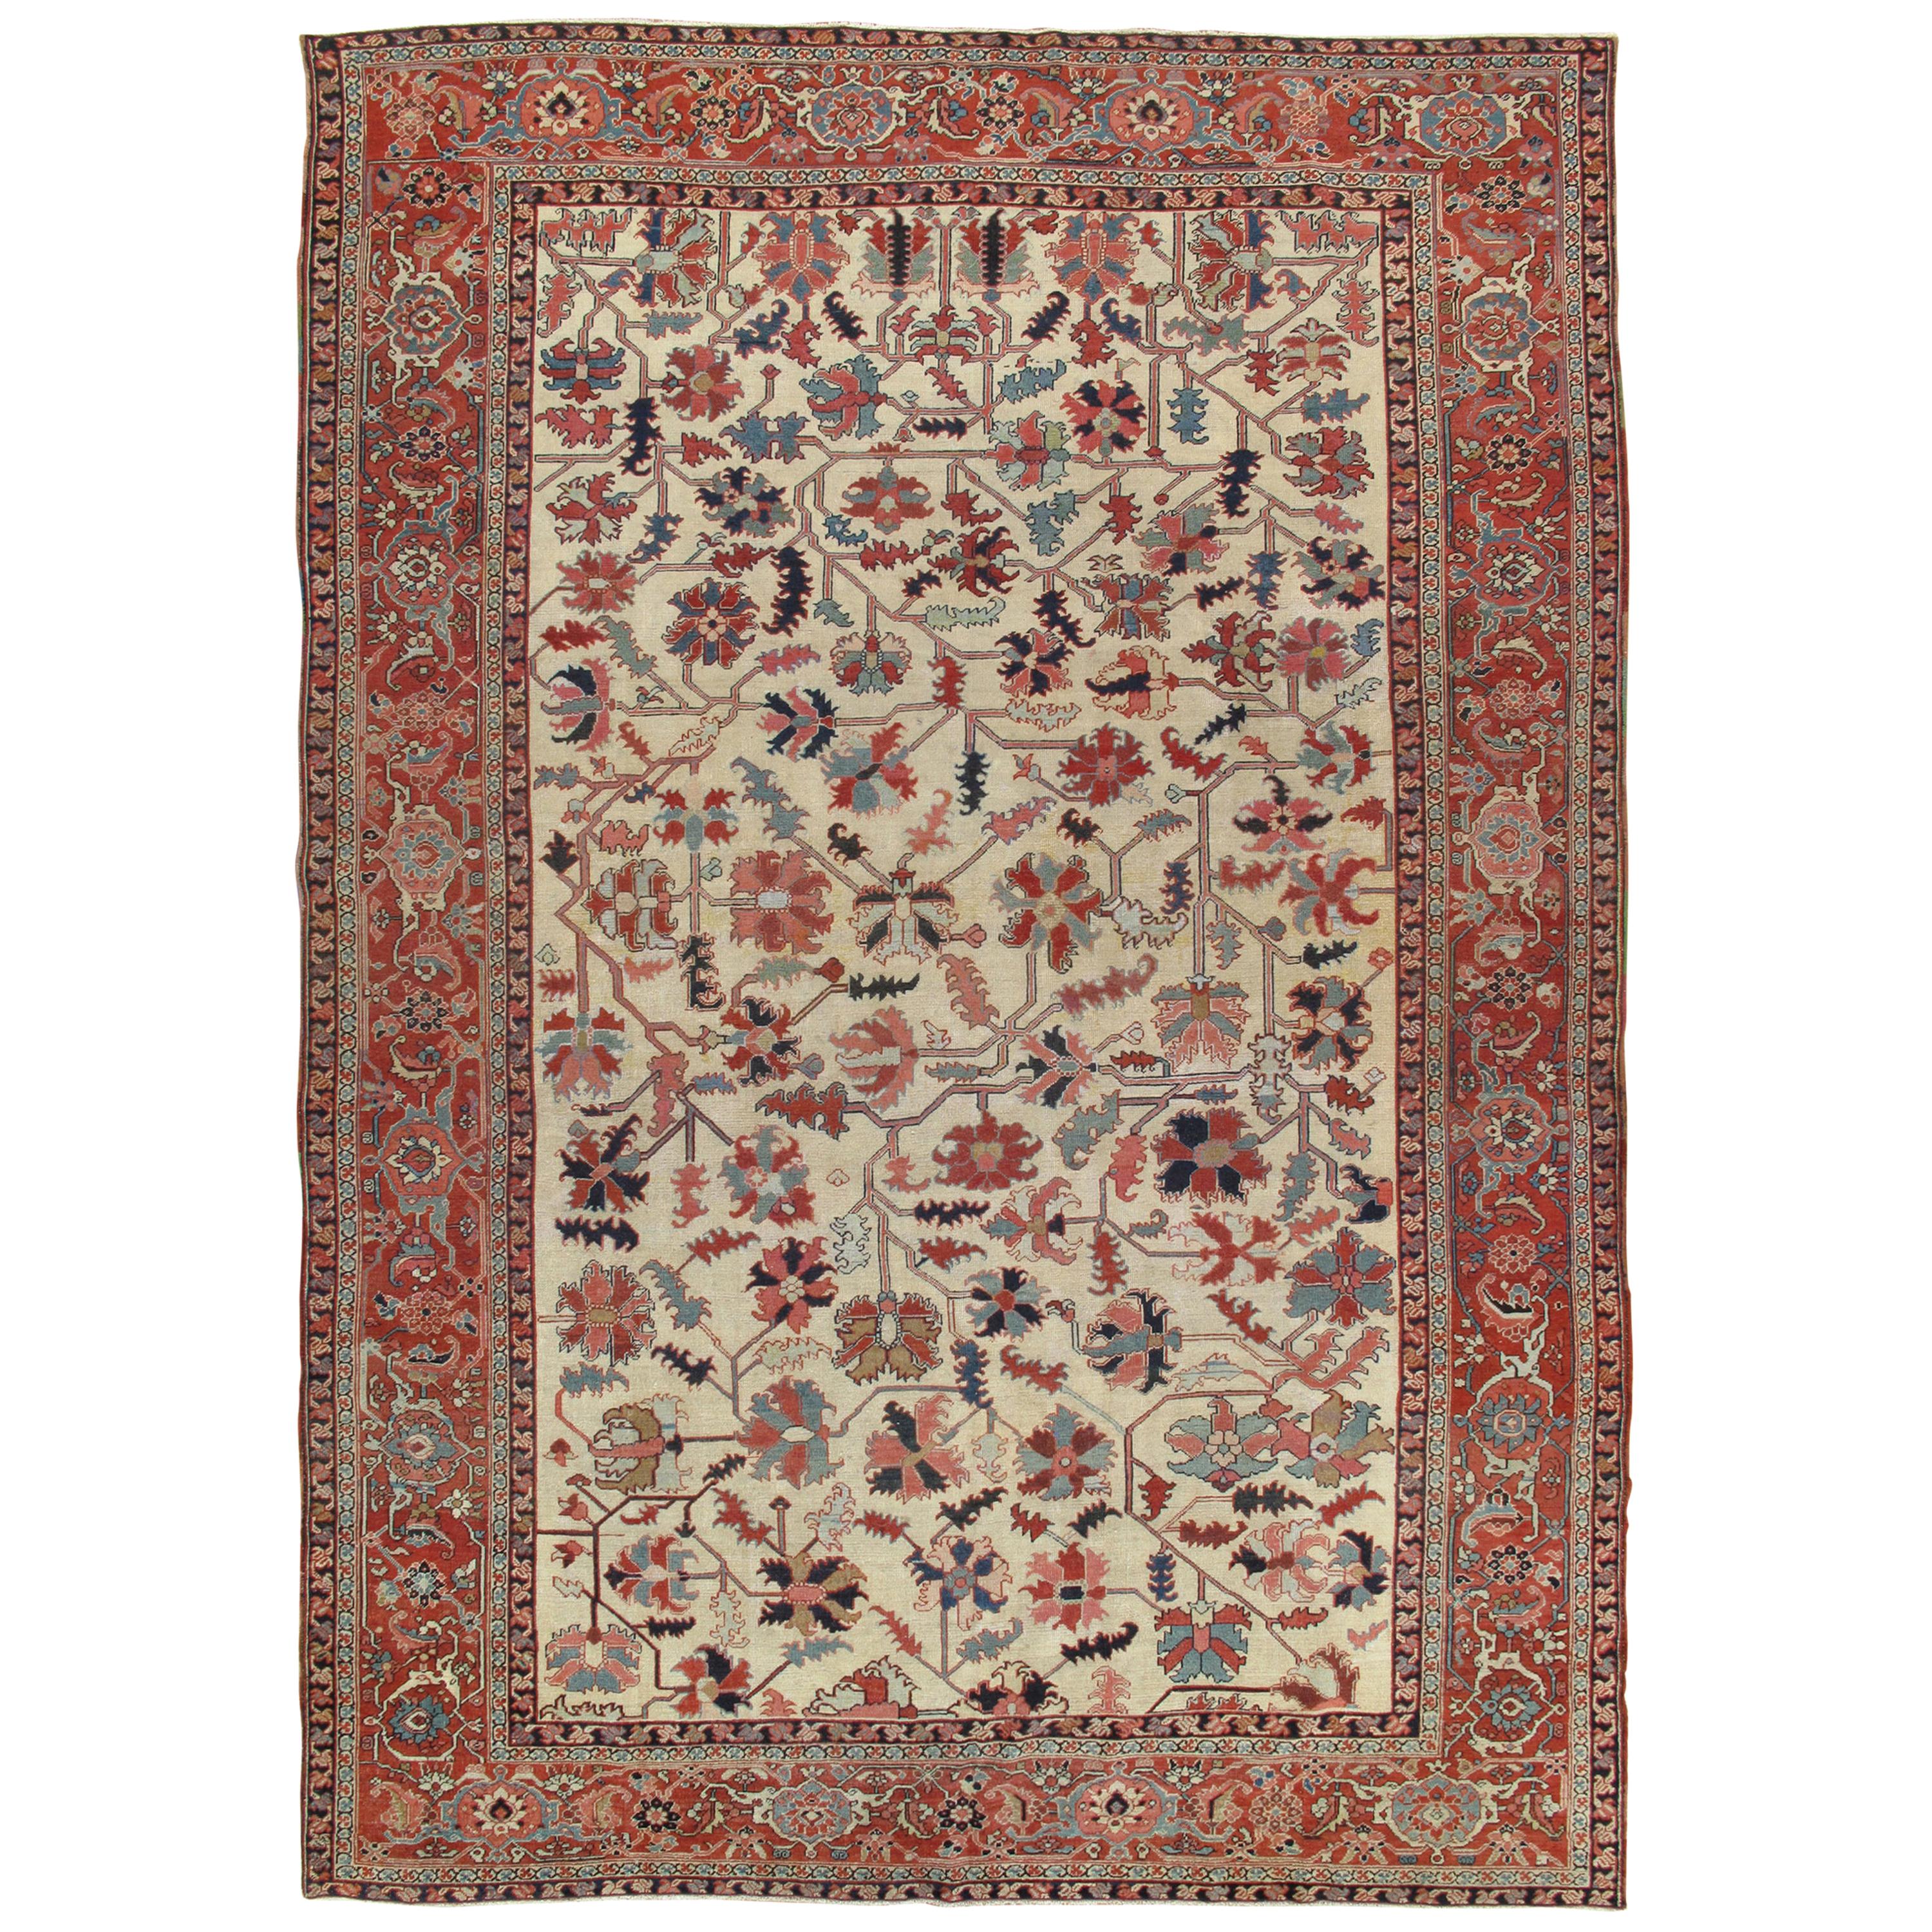 Tapis persan Serapi ancien, tapis oriental en laine fait à la main, ivoire et bleu clair